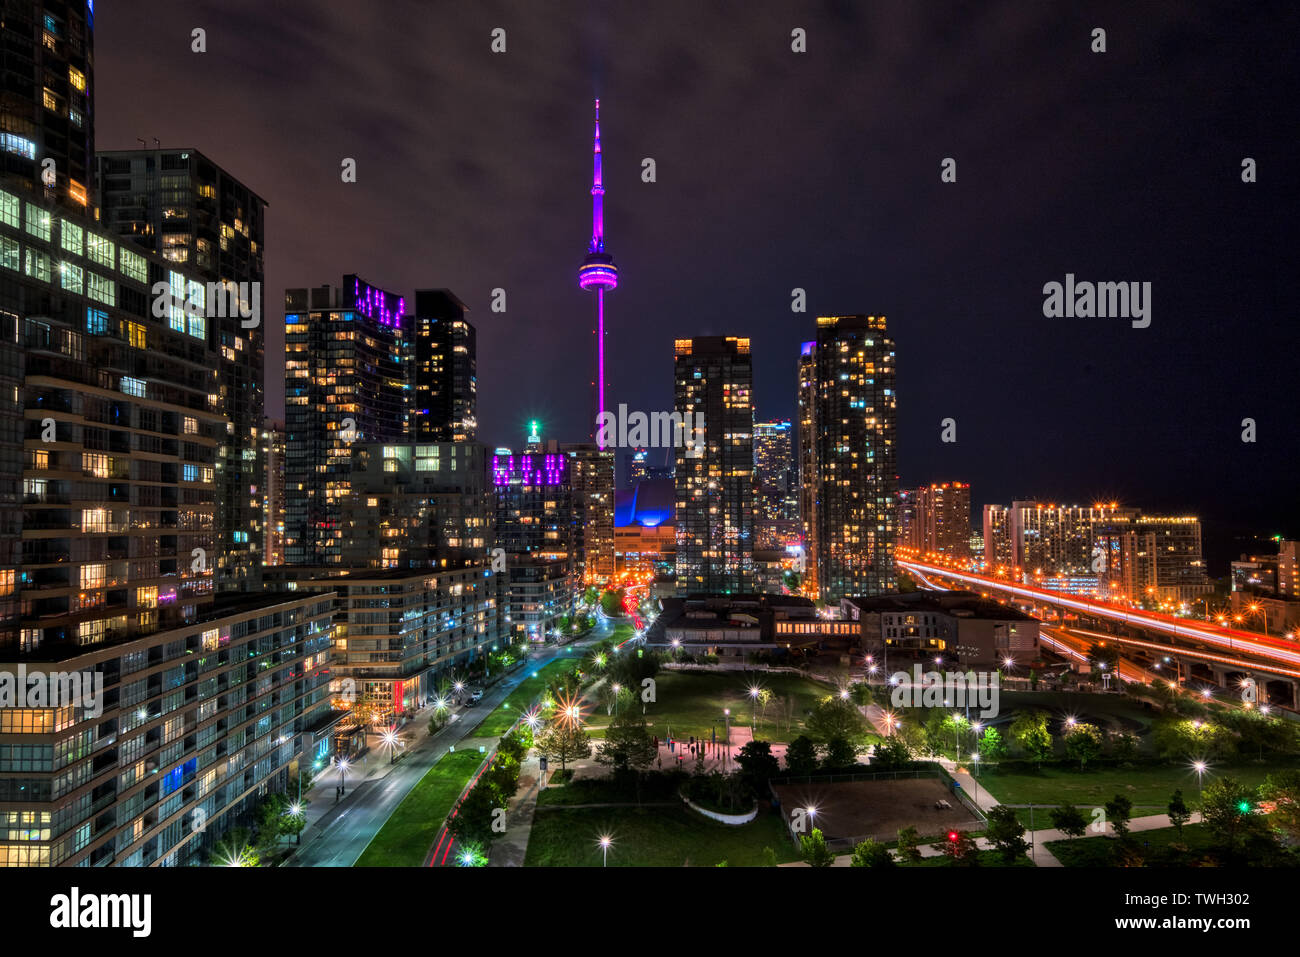 La CN Tower e canoa Parco di atterraggio illuminata di notte a Toronto, Ontario, Canada. Foto Stock